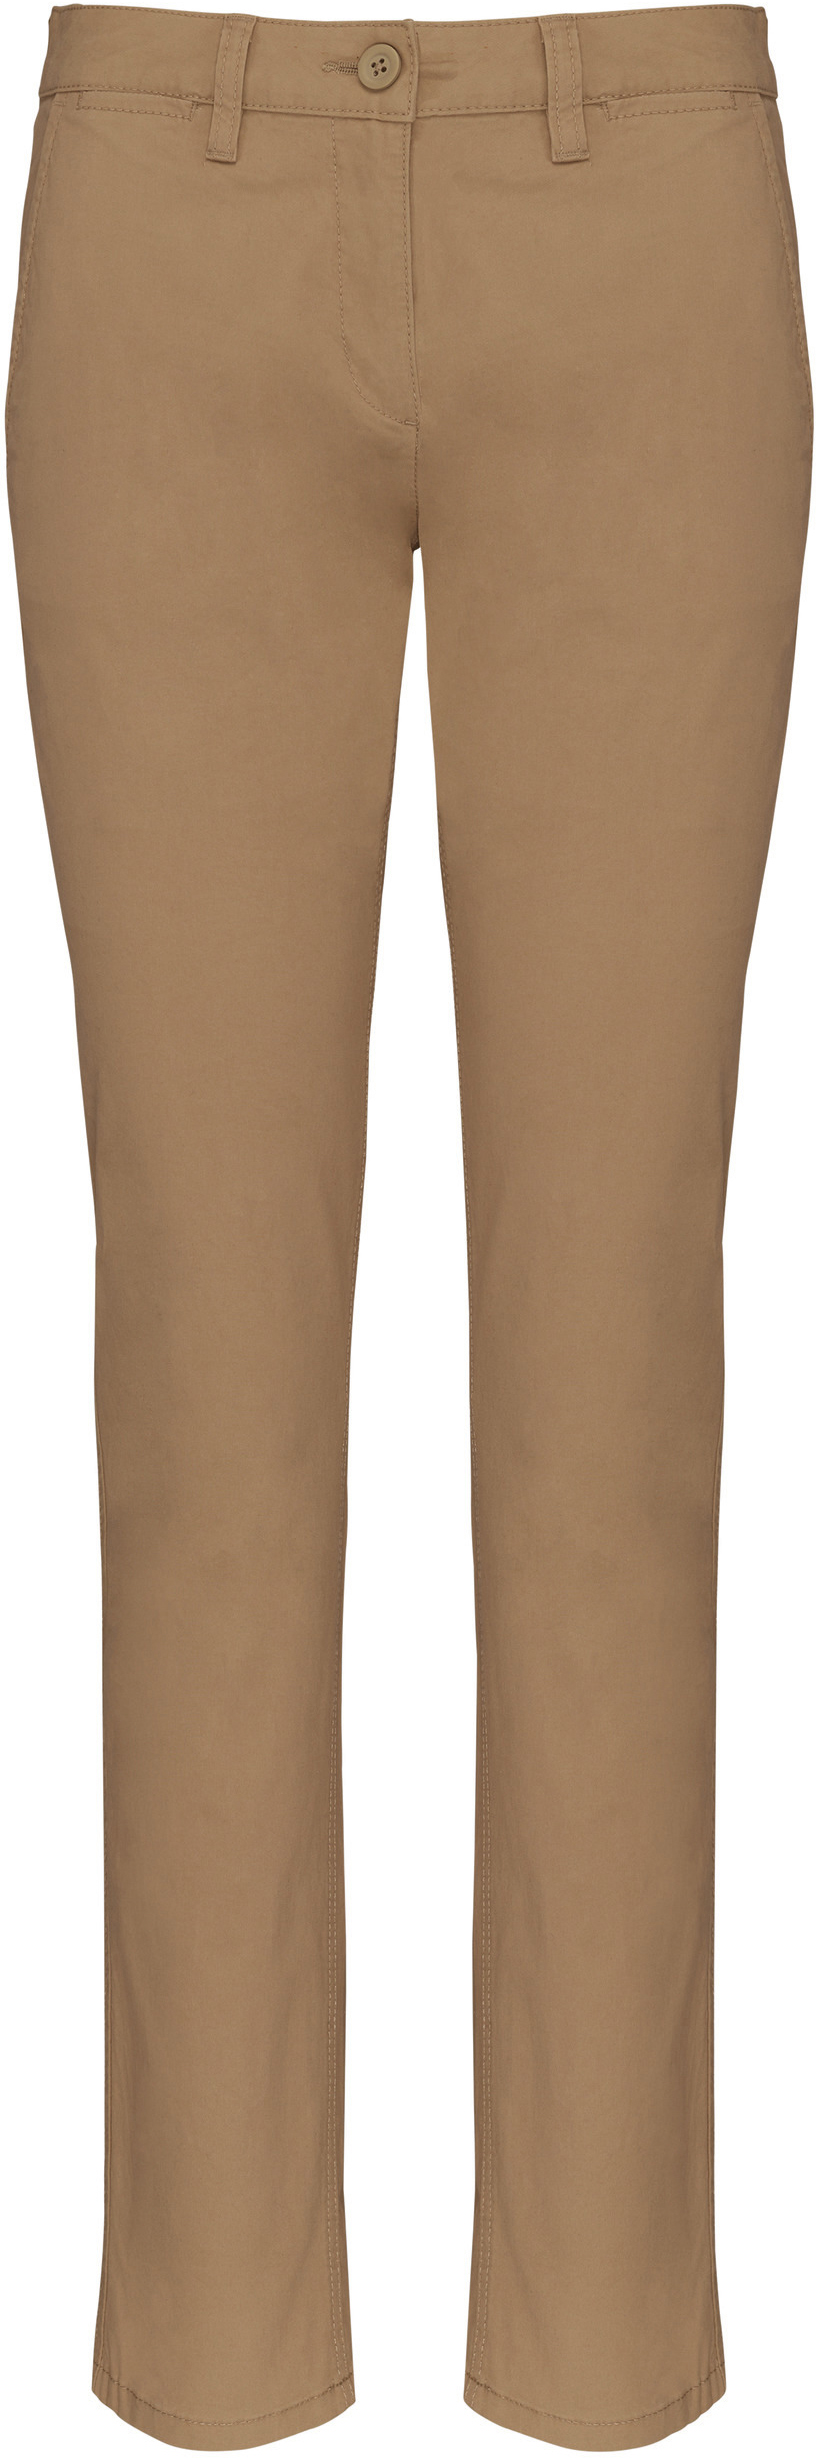 Dámské kalhoty CHINO K741 Barva: camel, Velikost: 36